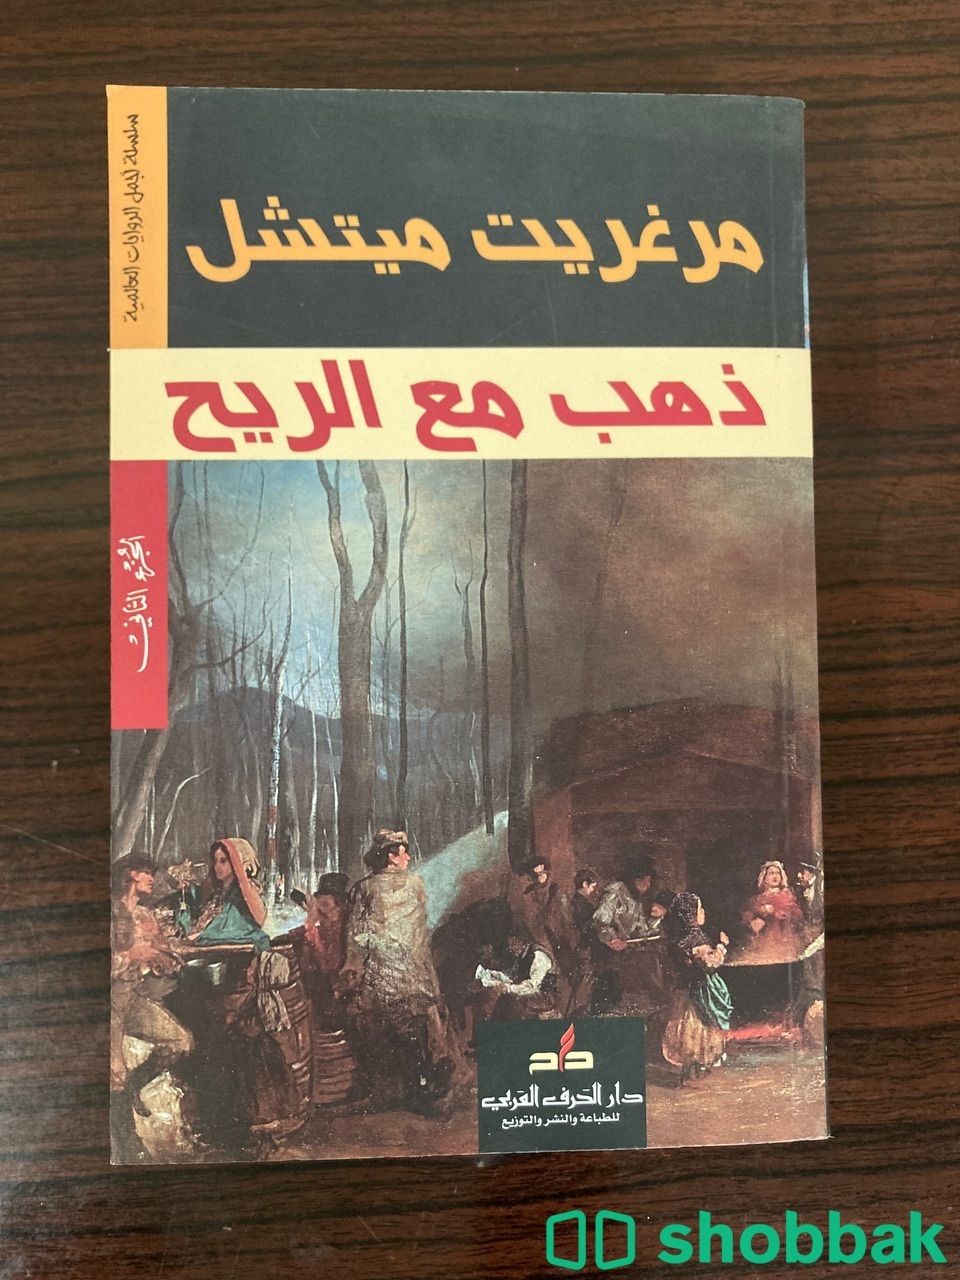 كتاب ذهب مع الريح Shobbak Saudi Arabia